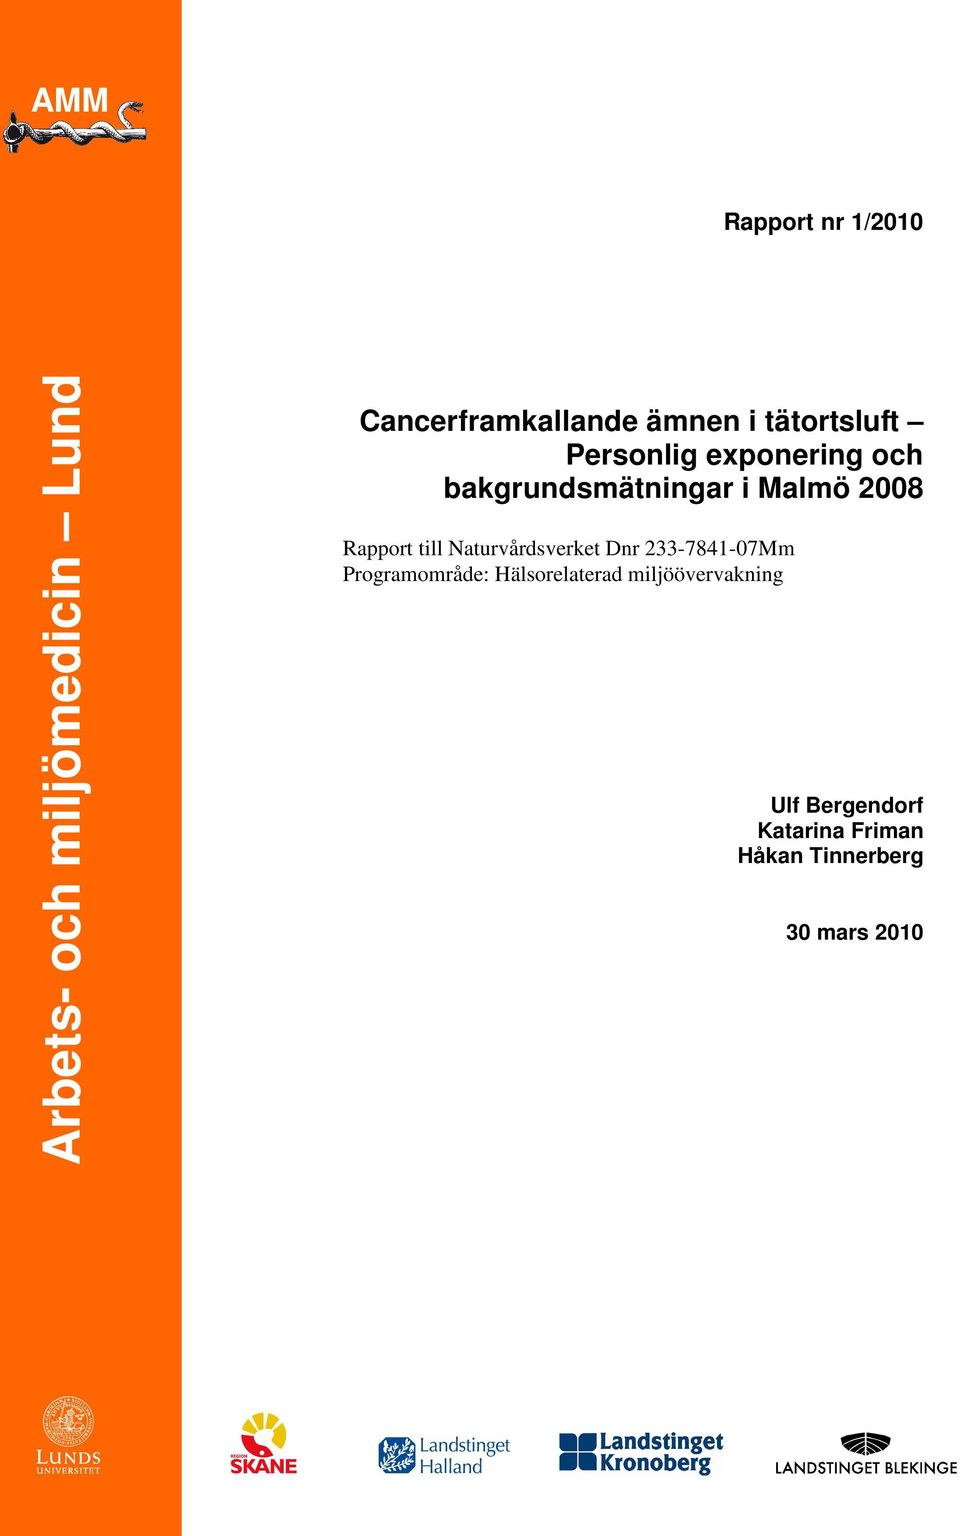 2008 Rapport till Naturvårdsverket Dnr 233-7841-07Mm Programområde: